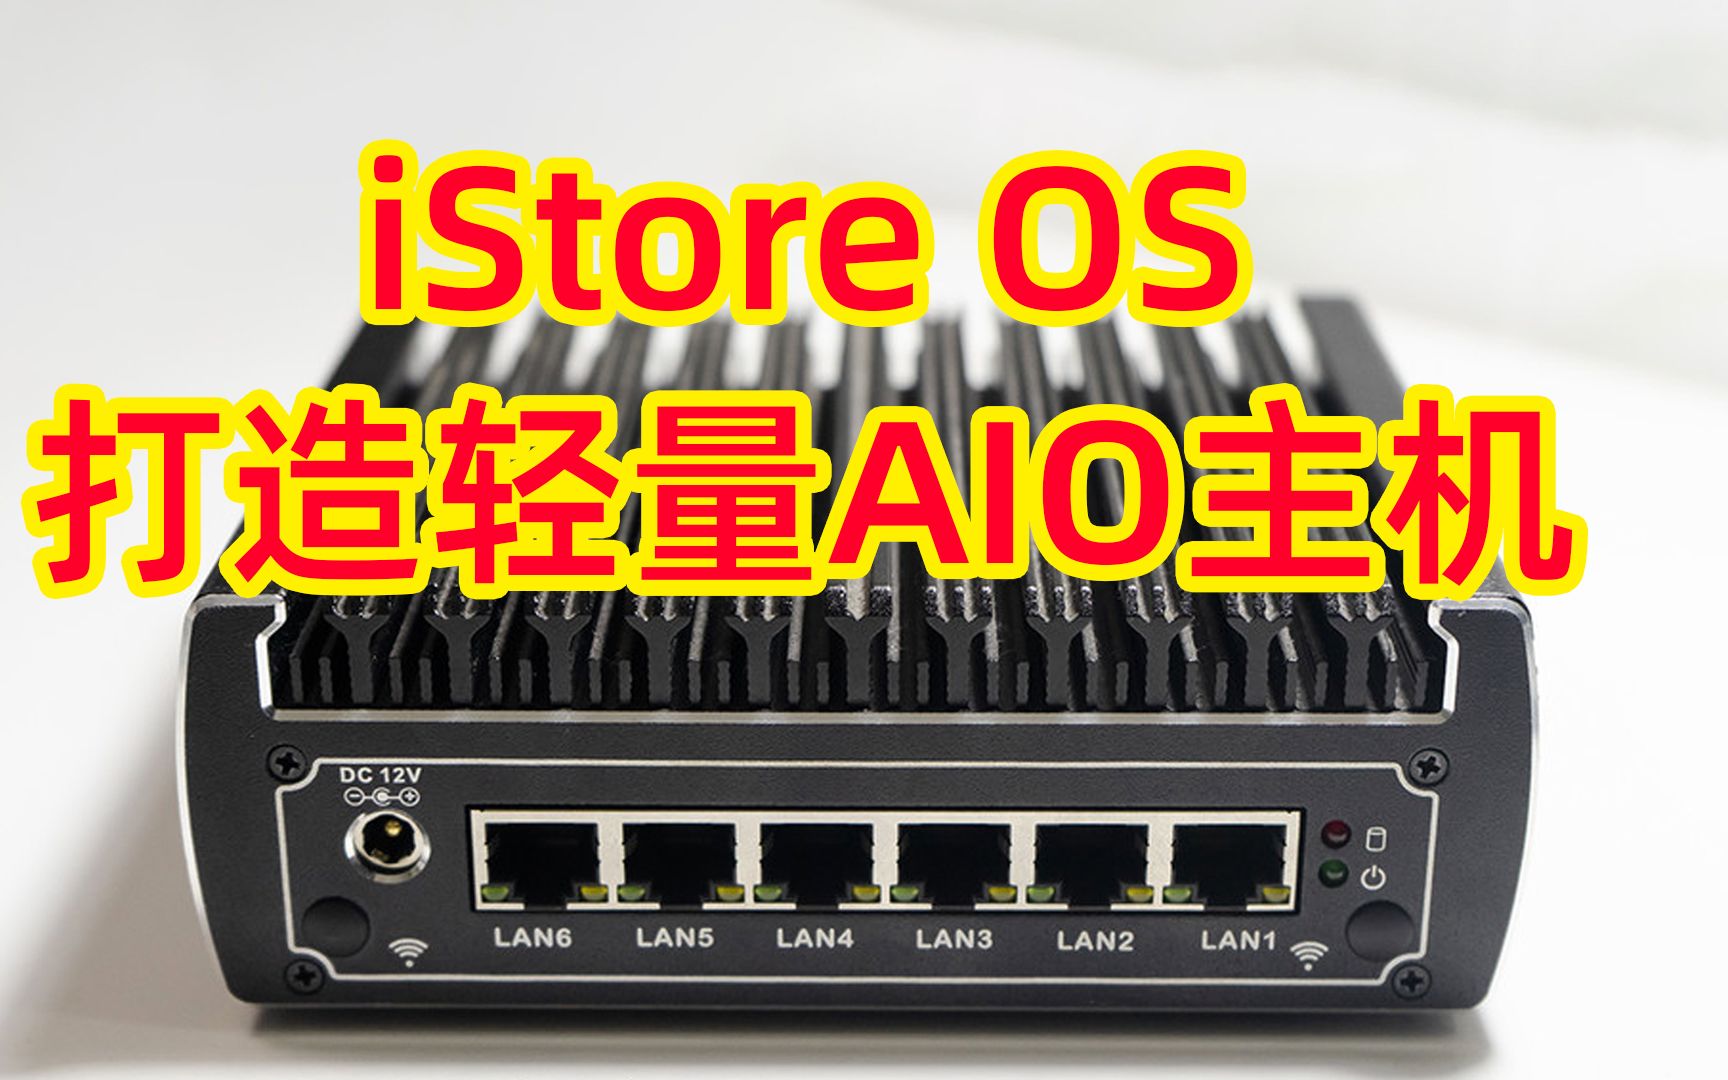 iStore OS打造轻AIO主机！实现NAS共享、远程下载+访问、Jellyfin影音服务器，物尽其用，一机多用！